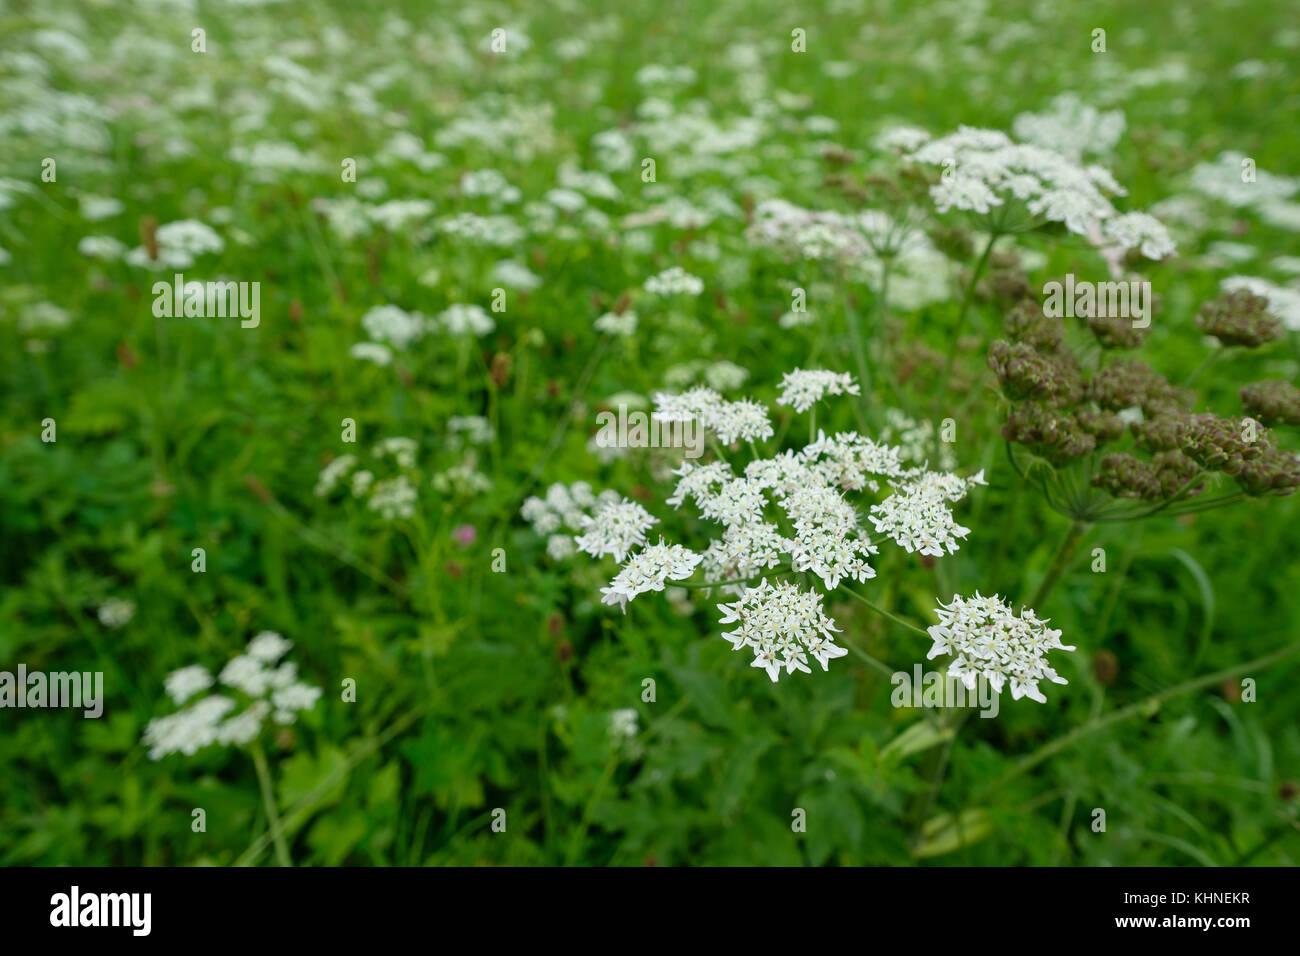 Yarrow (Achillea) on a green meadow in summer Stock Photo